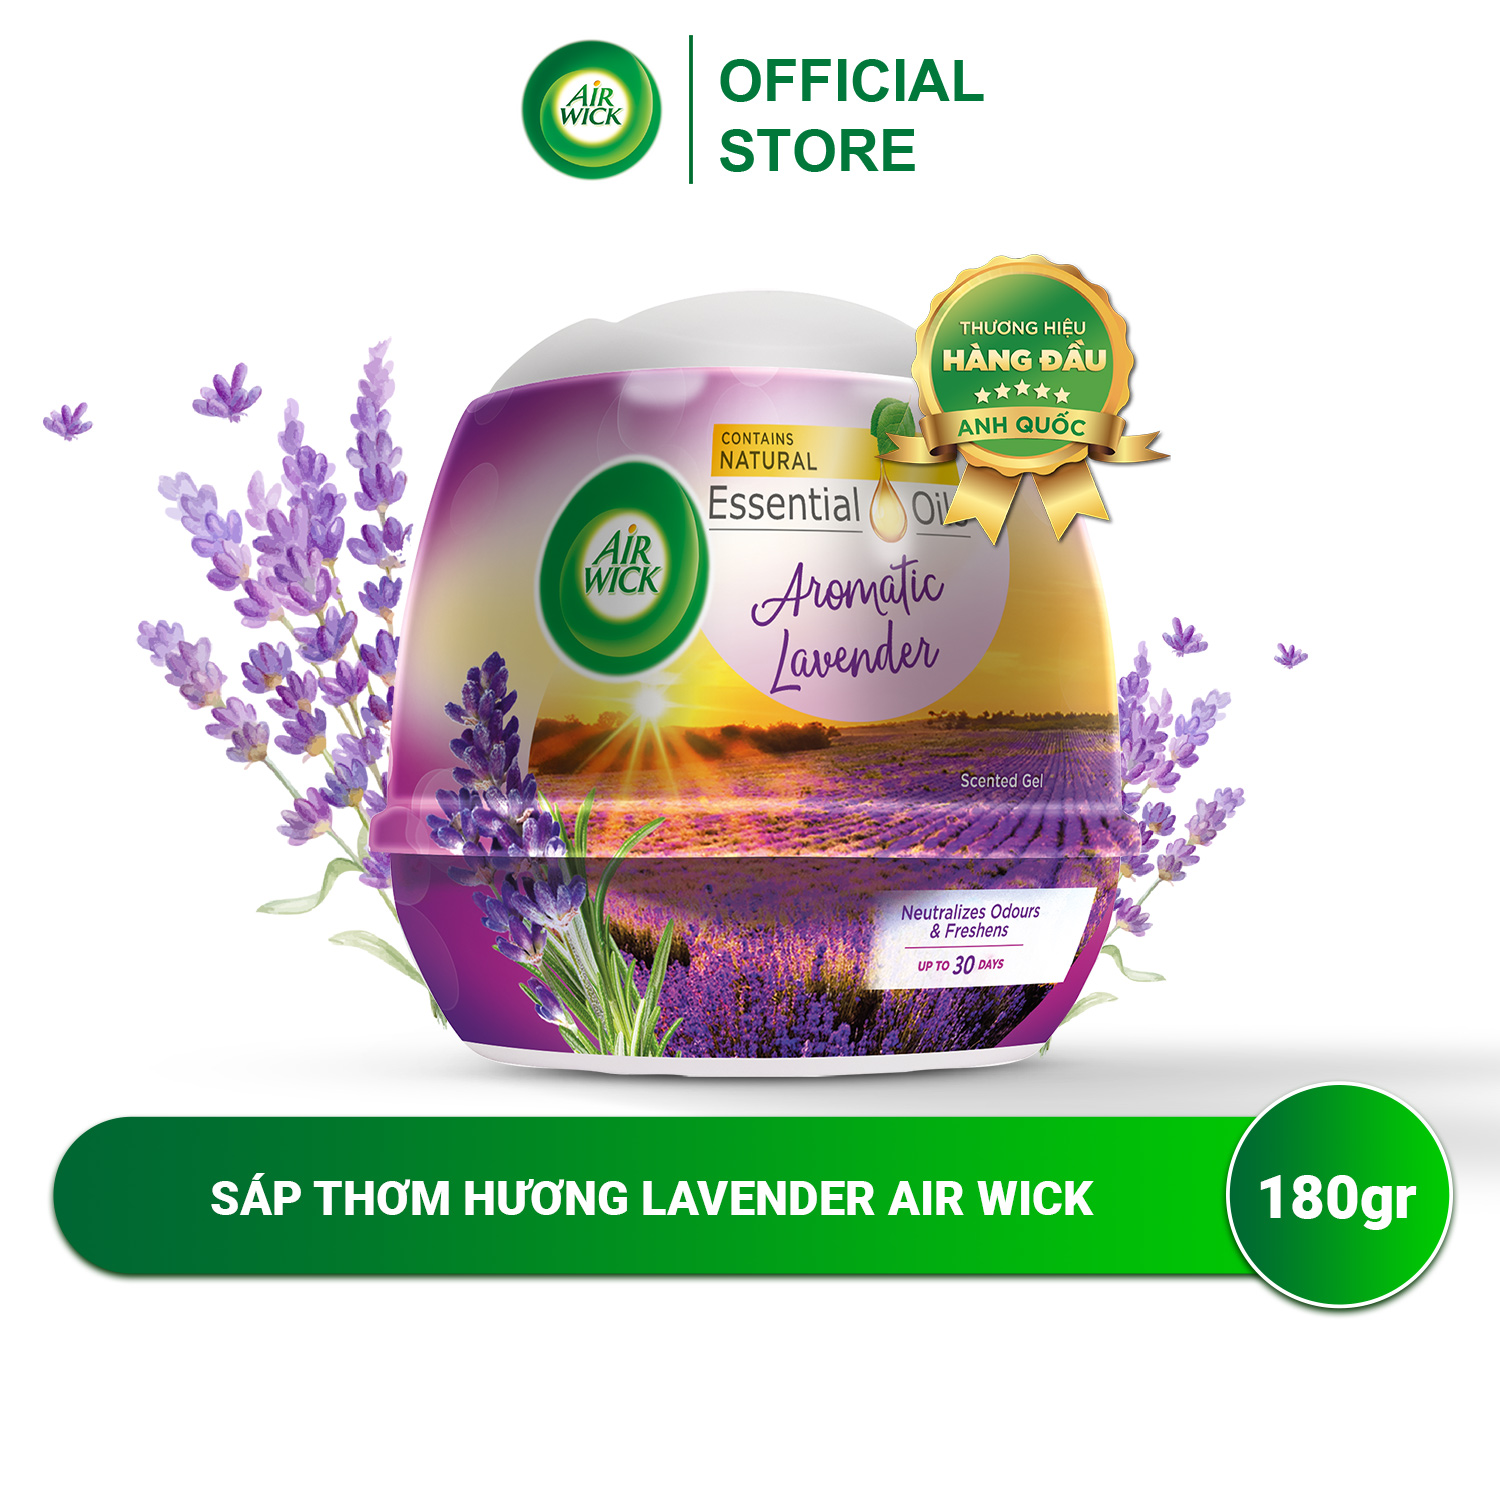 Sáp thơm nhà vệ sinh hương Lavender AIRWICK, hương thơm dịu nhẹ, mang lại cảm giác thư giãn 180g